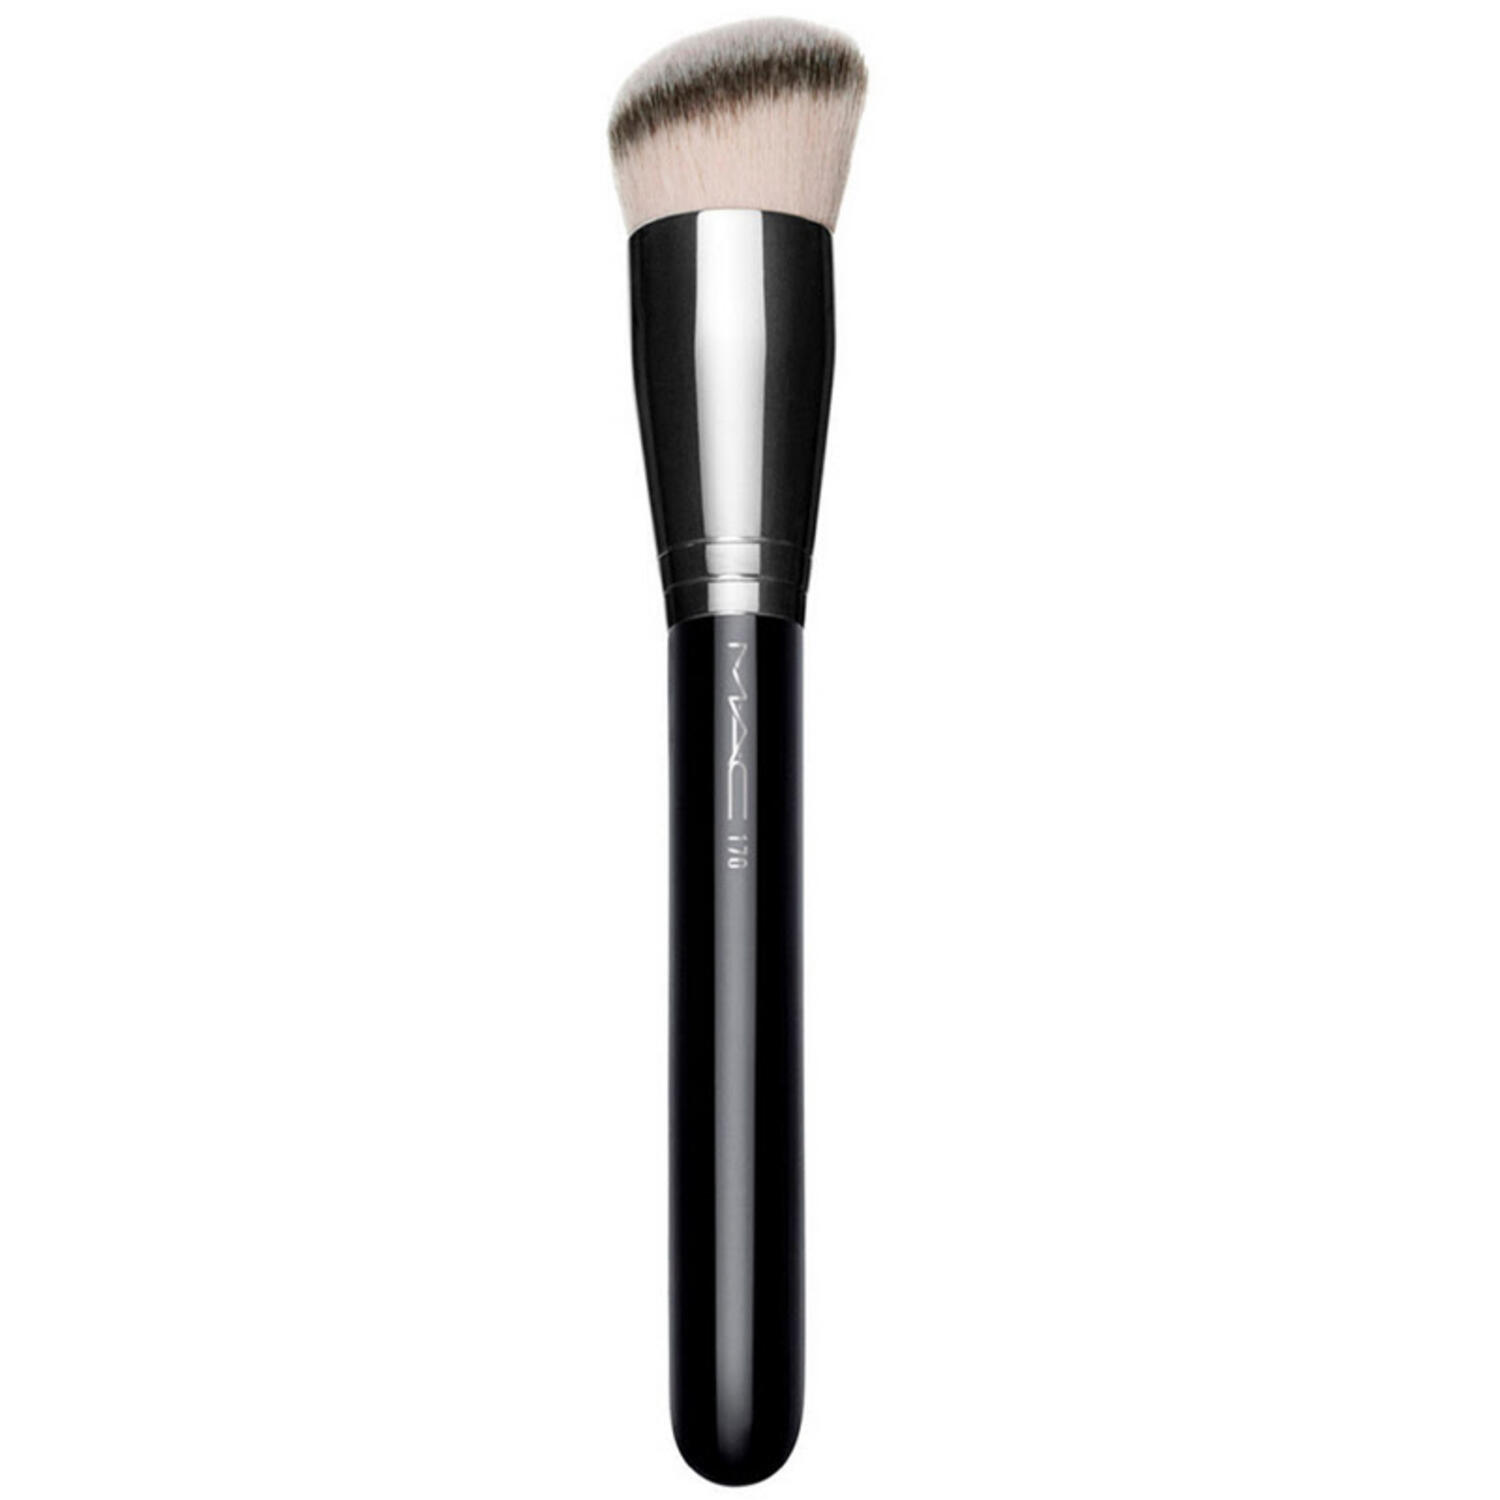 MAC Cosmetics Štetec na make-up 170 (Synthetic Rounded Slant Brush)